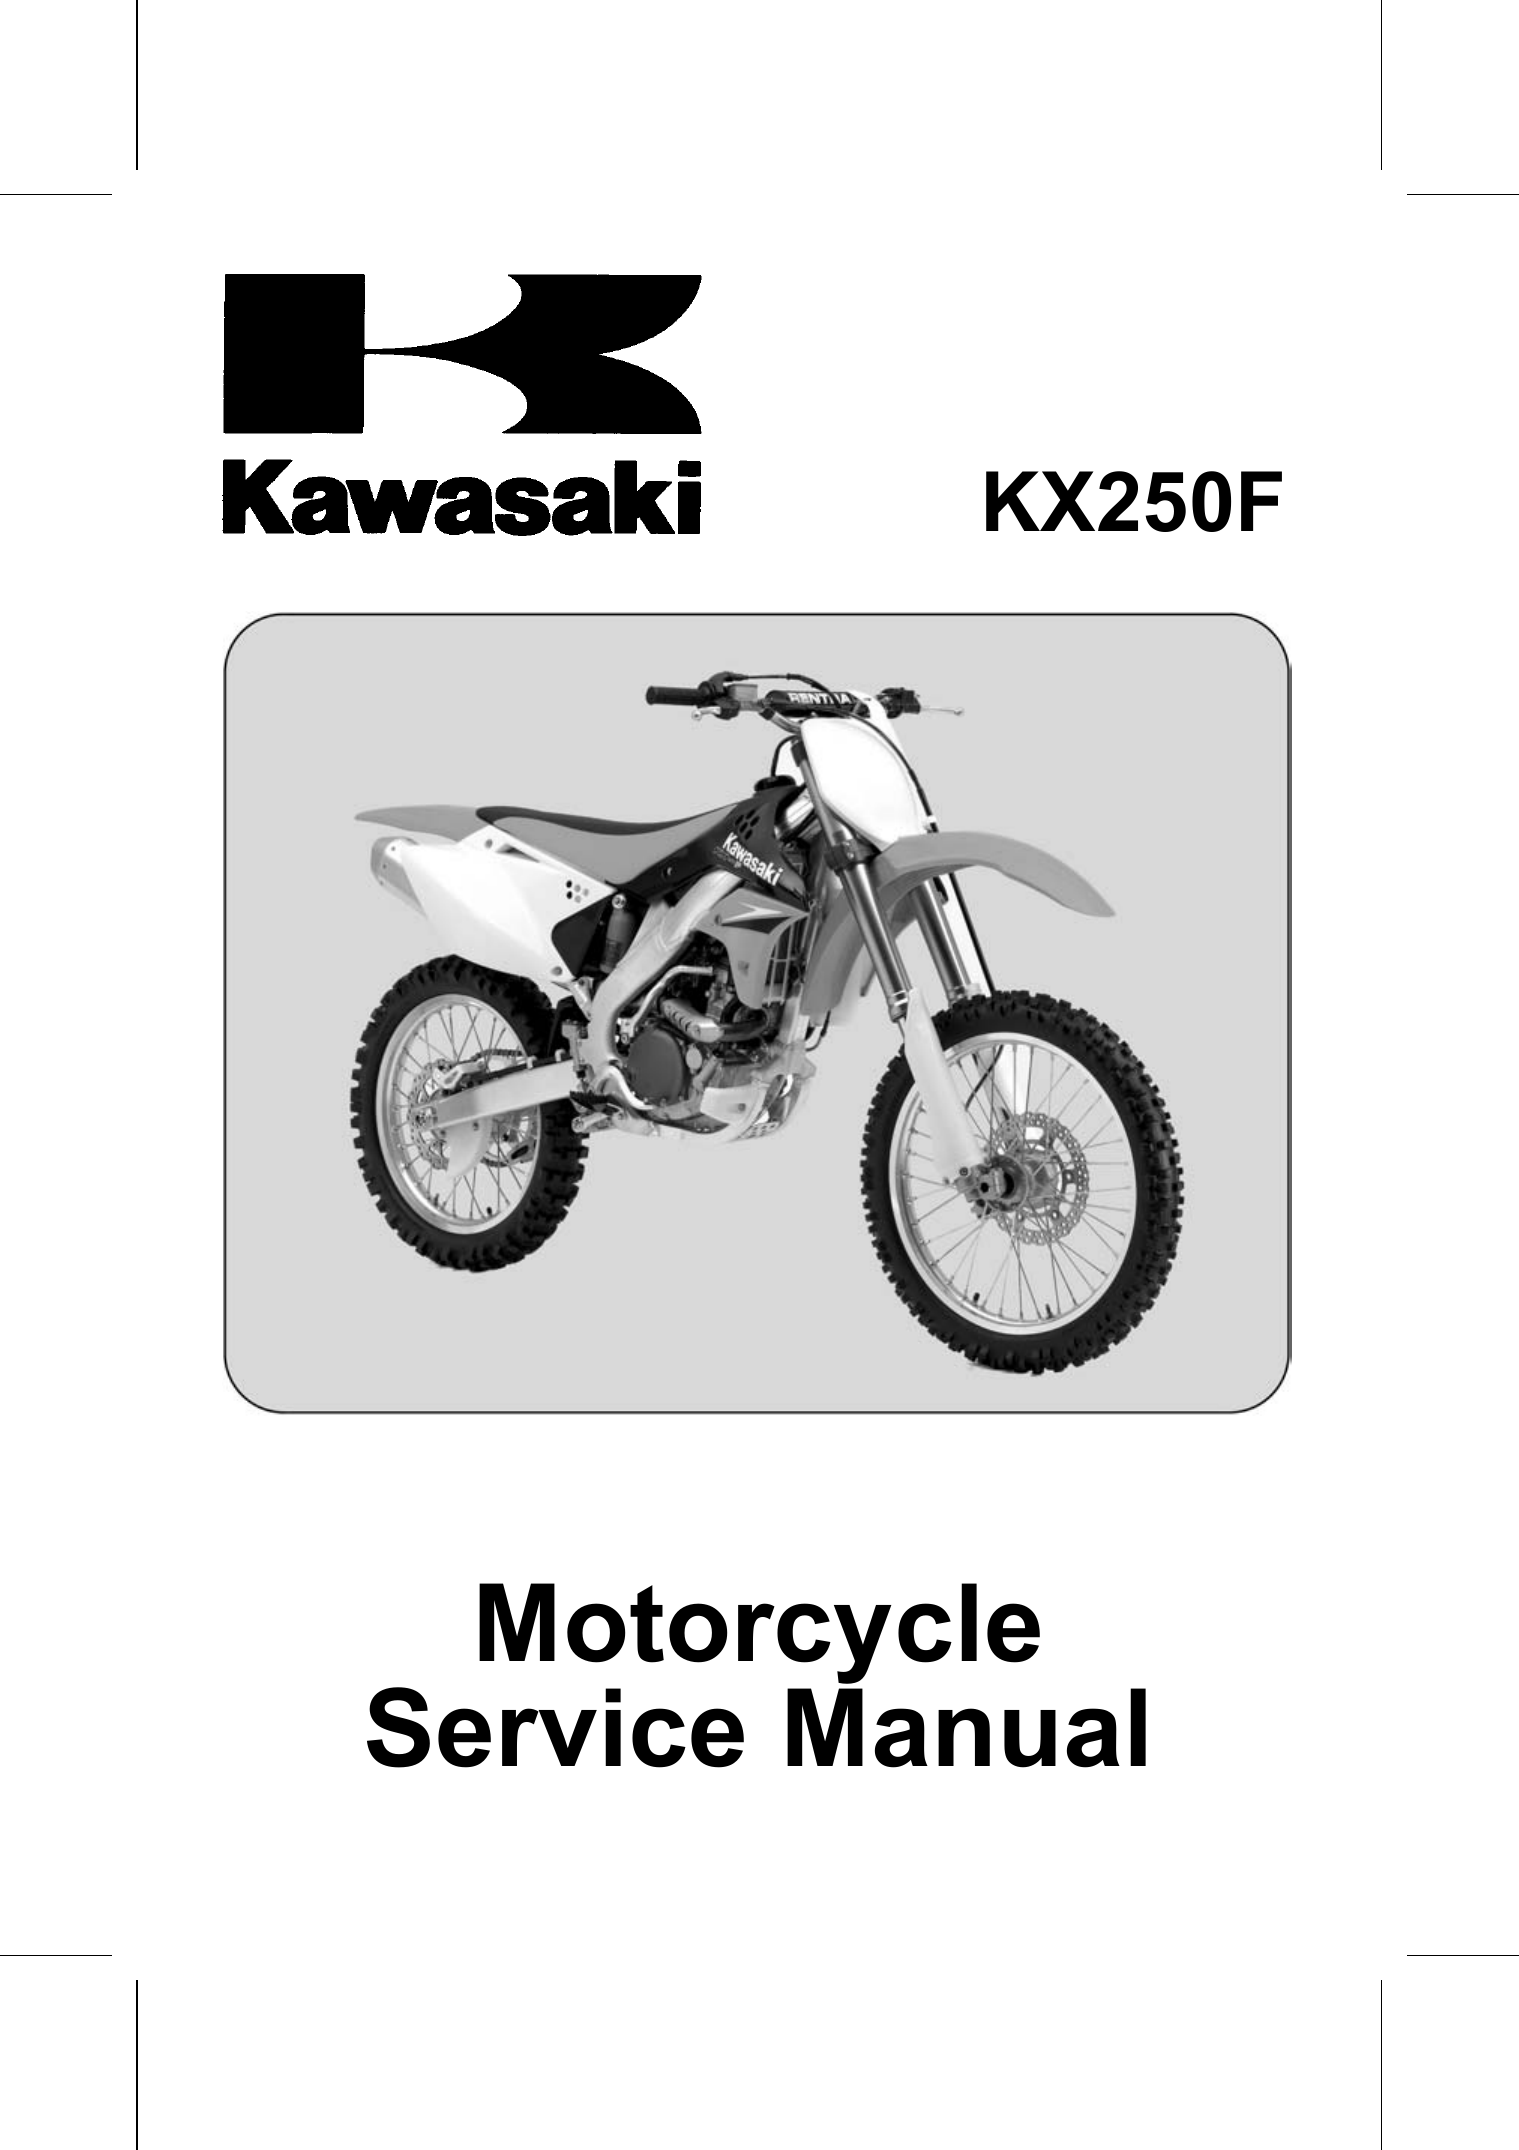 2006-2008 Kawasaki KX250F repair manual Preview image 1